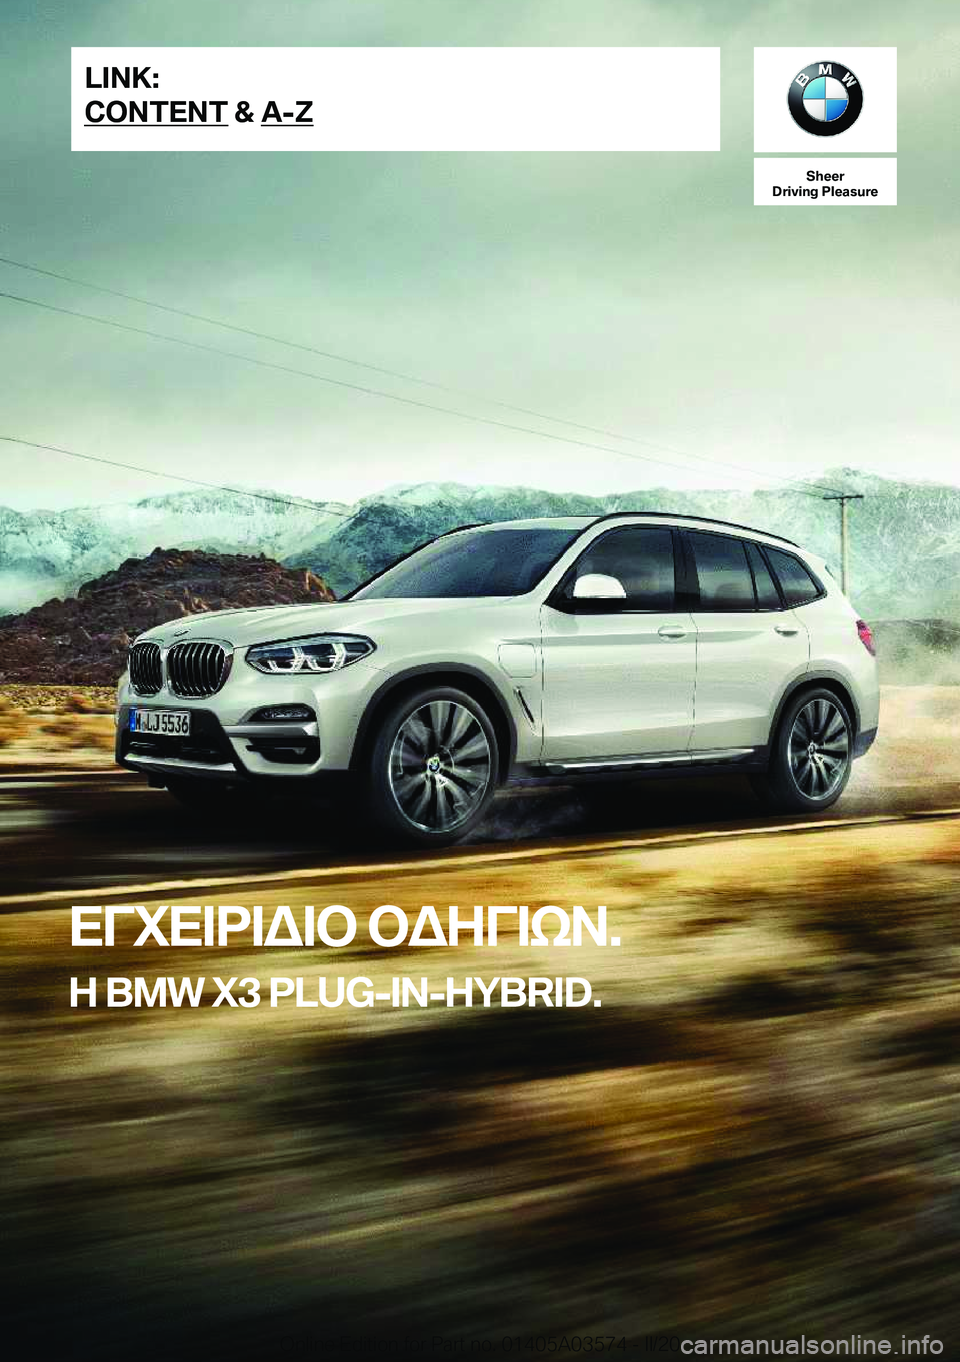 BMW X3 PLUG IN HYBRID 2020  ΟΔΗΓΌΣ ΧΡΉΣΗΣ (in Greek) �S�h�e�e�r
�D�r�i�v�i�n�g��P�l�e�a�s�u�r�e
XViX=d=W=b�bWZV=kA�.
Z��B�M�W��X�3��P�L�U�G�-�I�N�-�H�Y�B�R�I�D�.�L�I�N�K�:
�C�O�N�T�E�N�T��&��A�-�Z�O�n�l�i�n�e��E�d�i�t�i�o�n��f